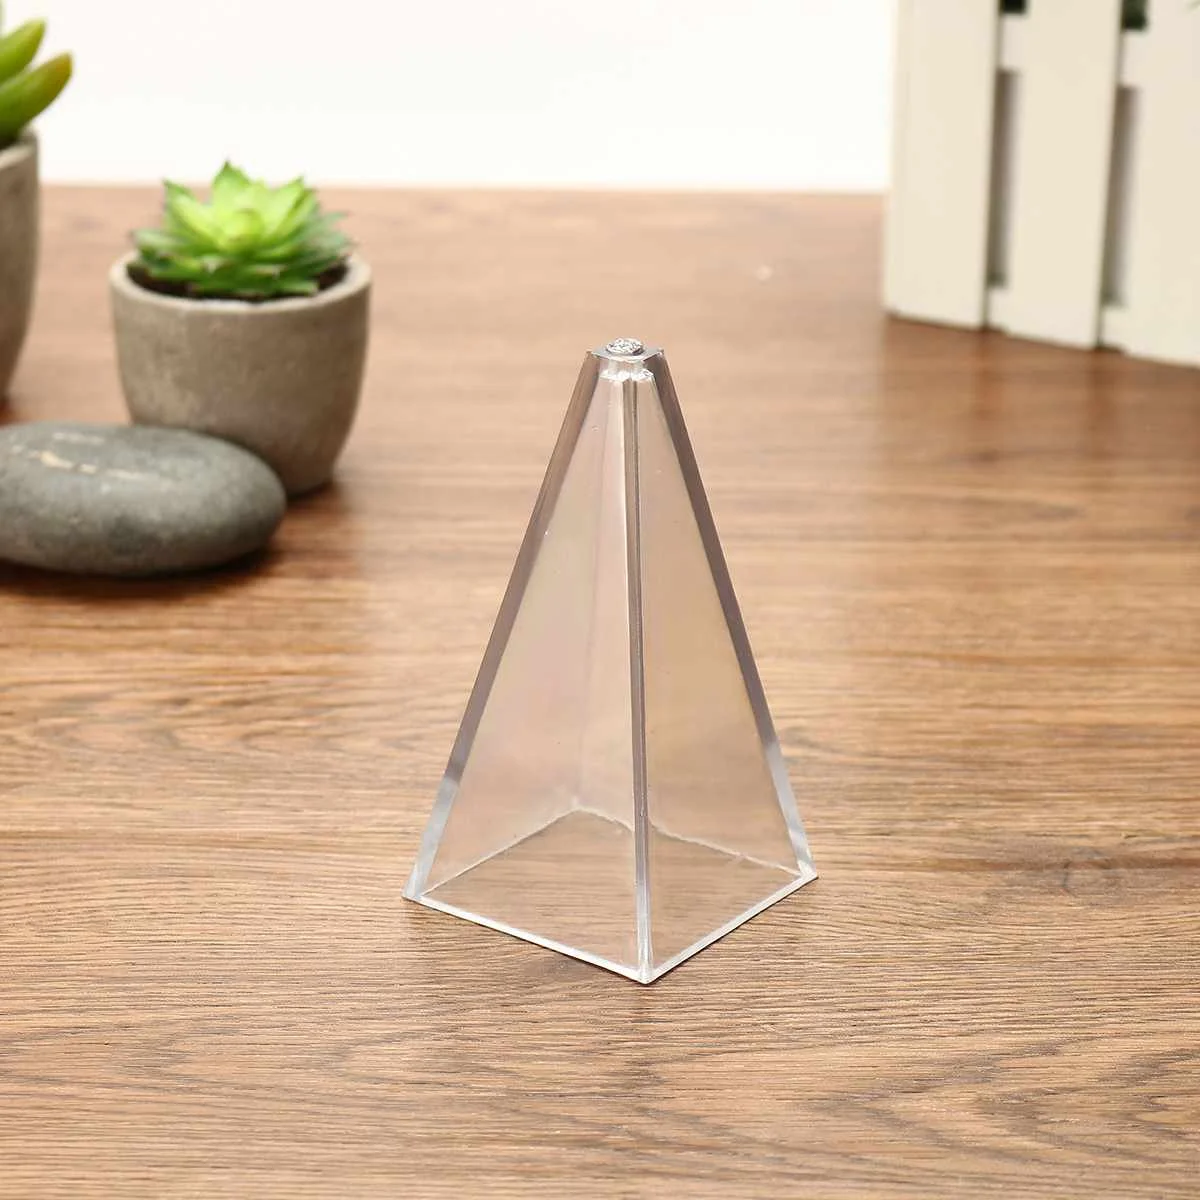 Прозрачная пластиковая Свеча для изготовления прессформы Формы для свечей свеча «сделай сам» мыльная глина для поделок инструменты Сфера пирамидальная круговой конус форма - Цвет: Pyramid S